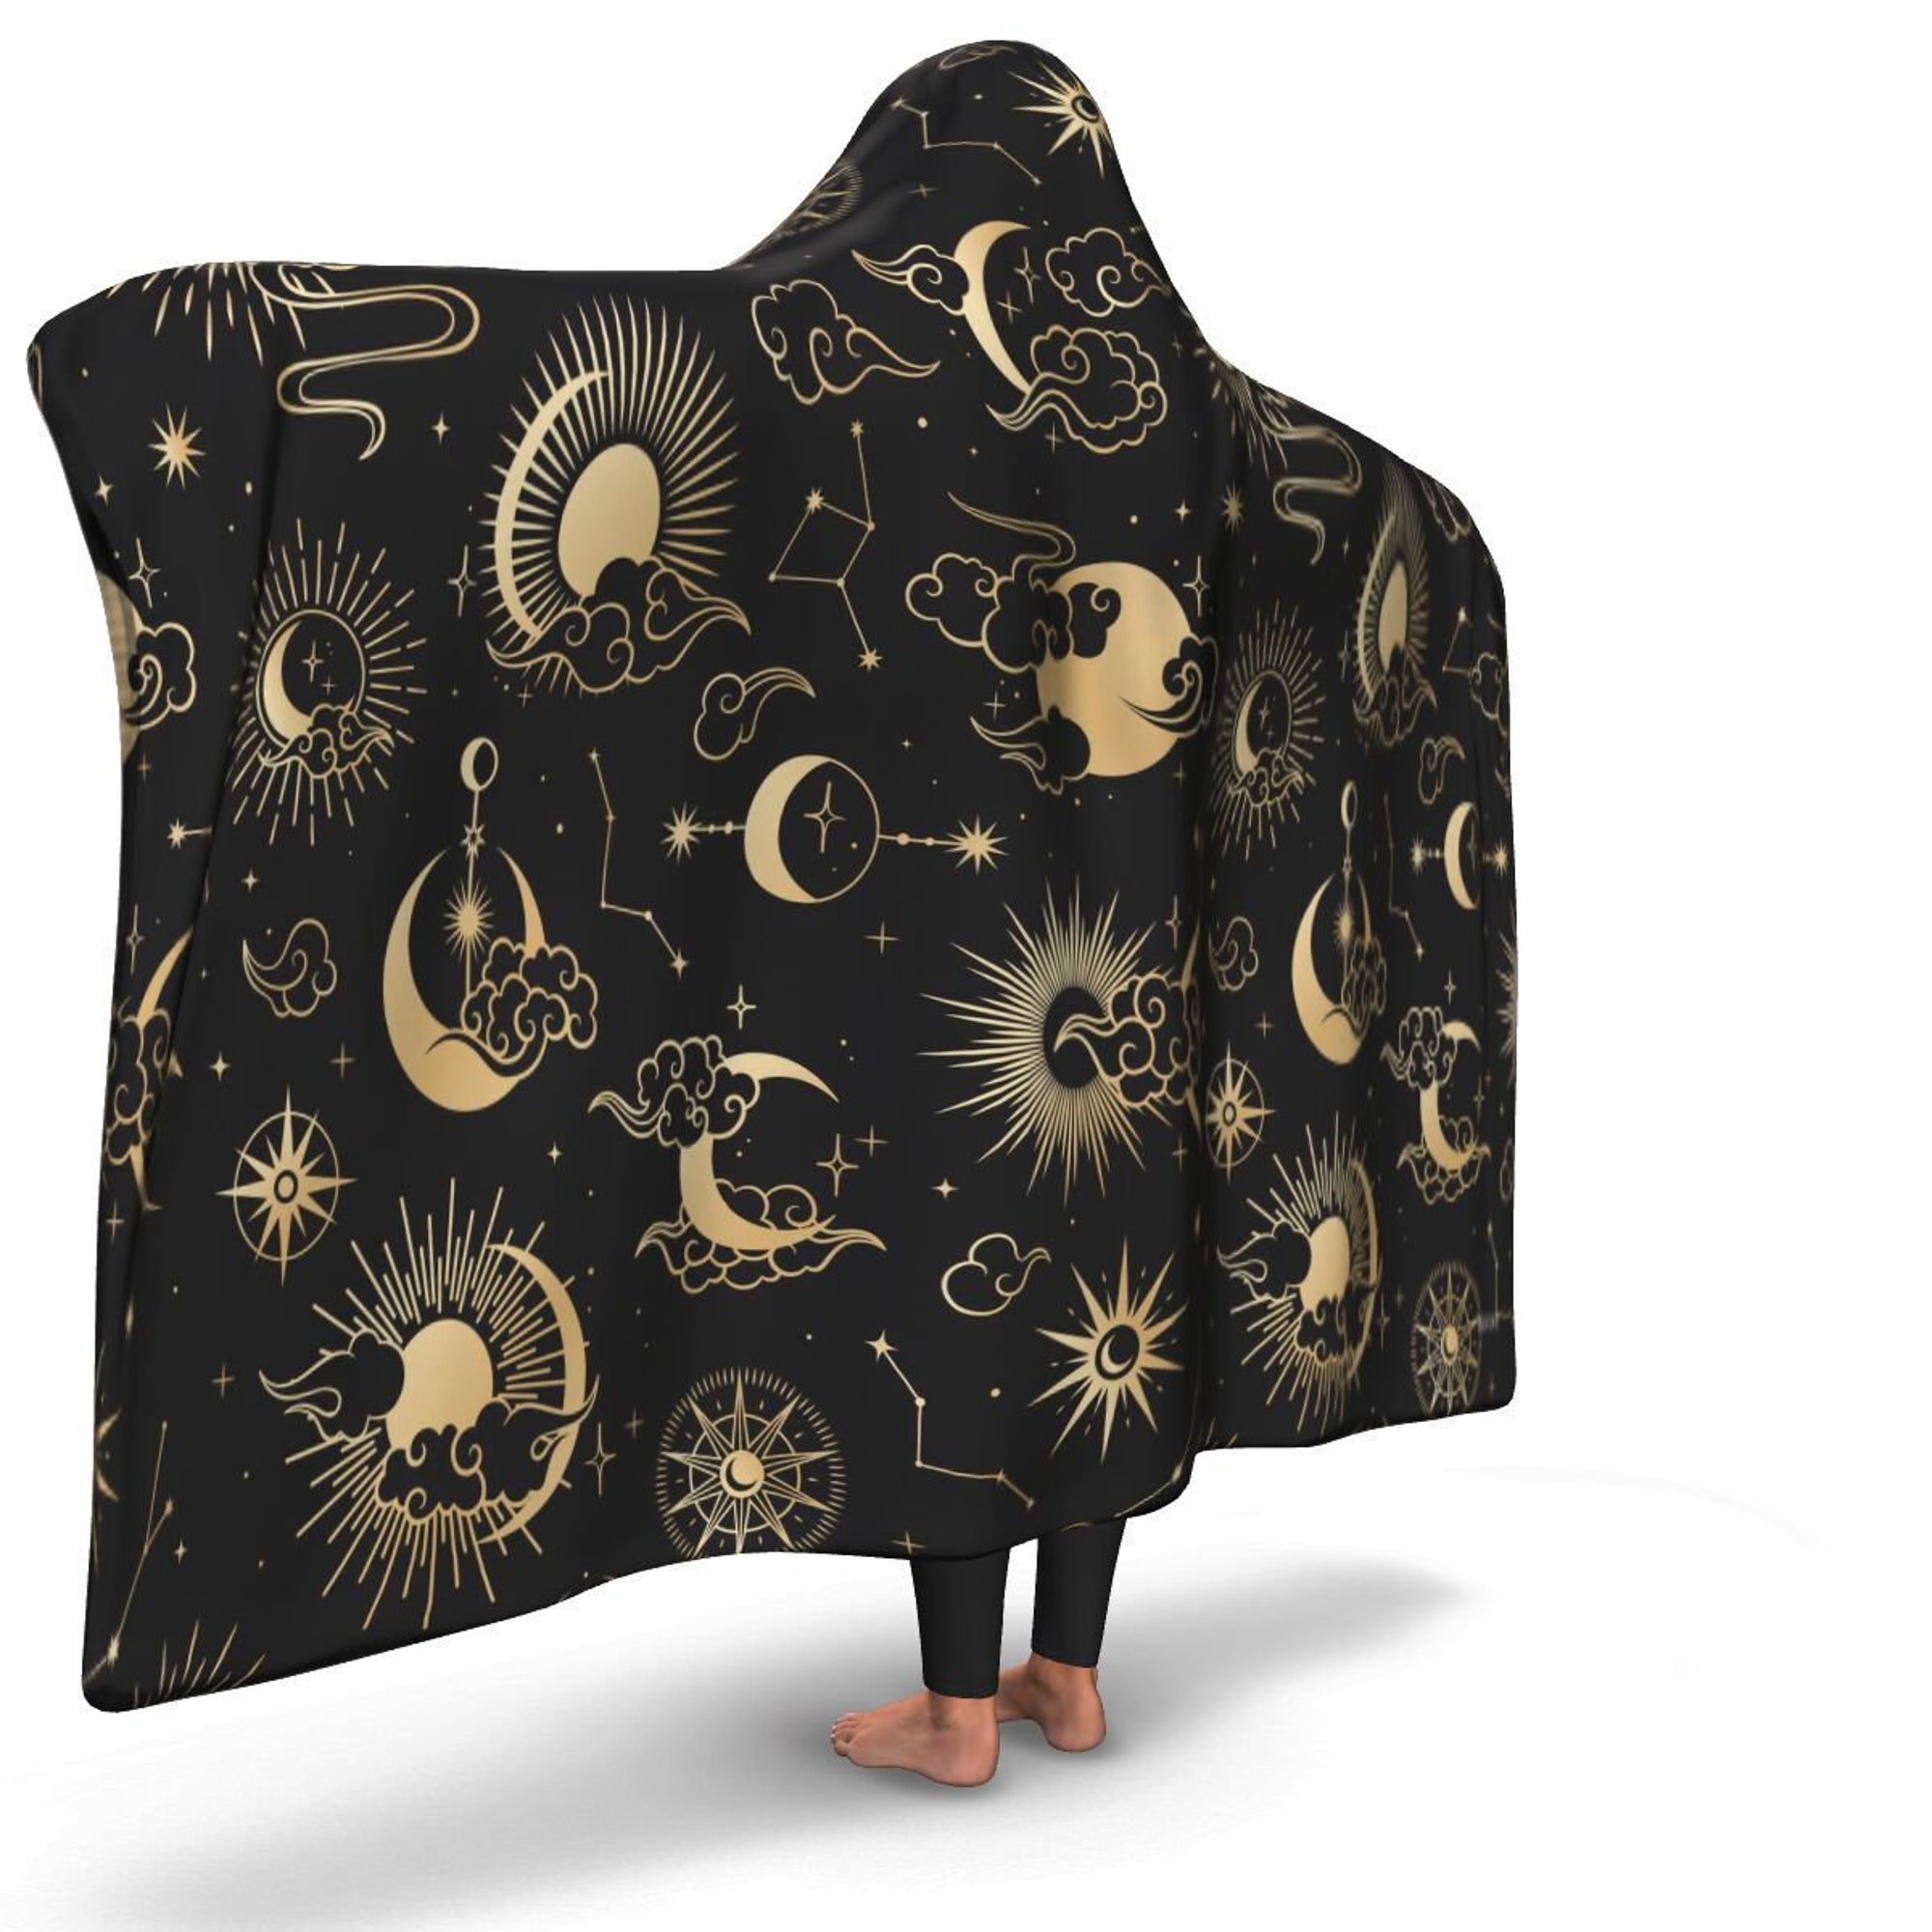 Moon Sun Sherpa Hooded Blanket, Stars Oriental Festival Fleece Microfleece Adult Youth Men Woman Wearable Cloak Winter Gift